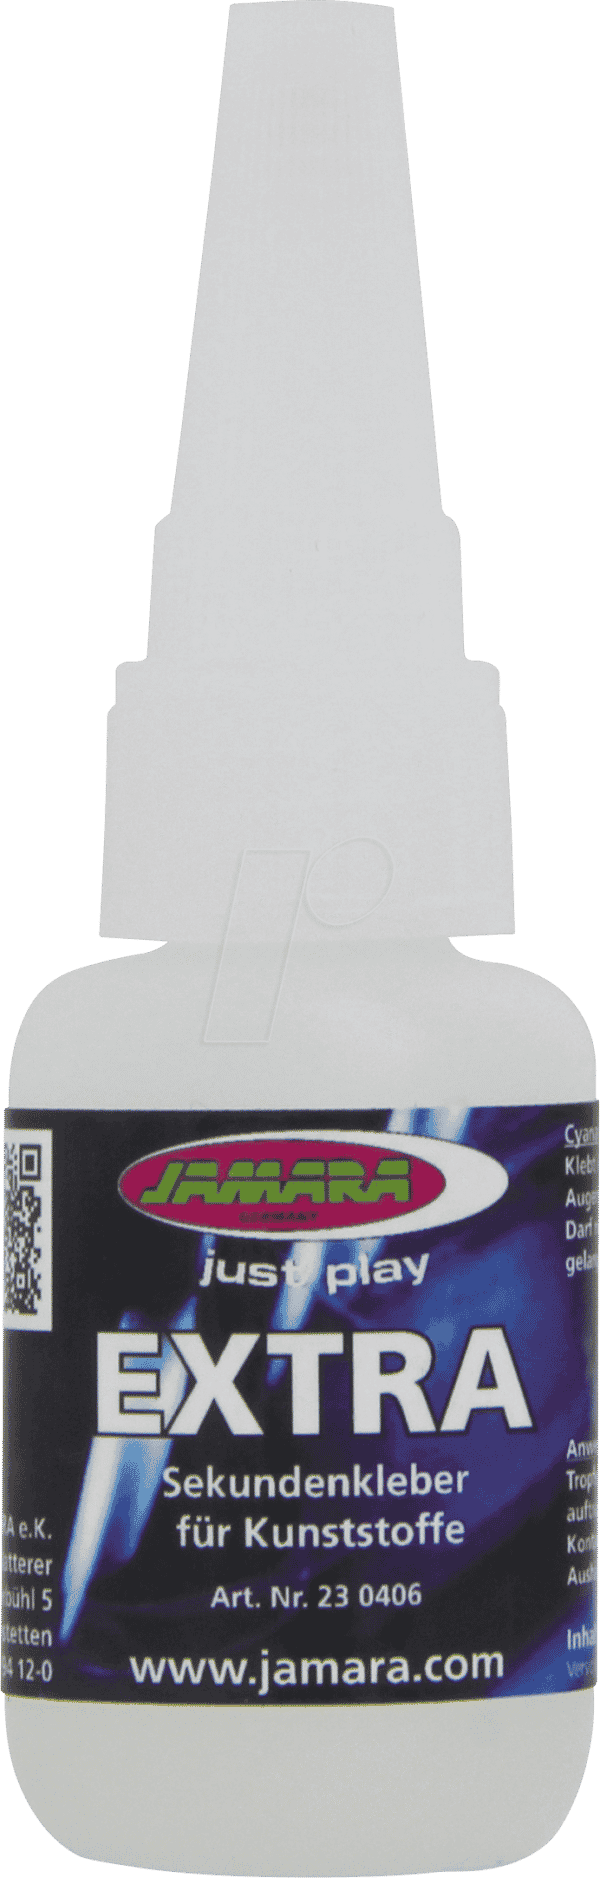 JAMARA 230406 - Sekundenkleber EXTRA für Kunststoffe 20g